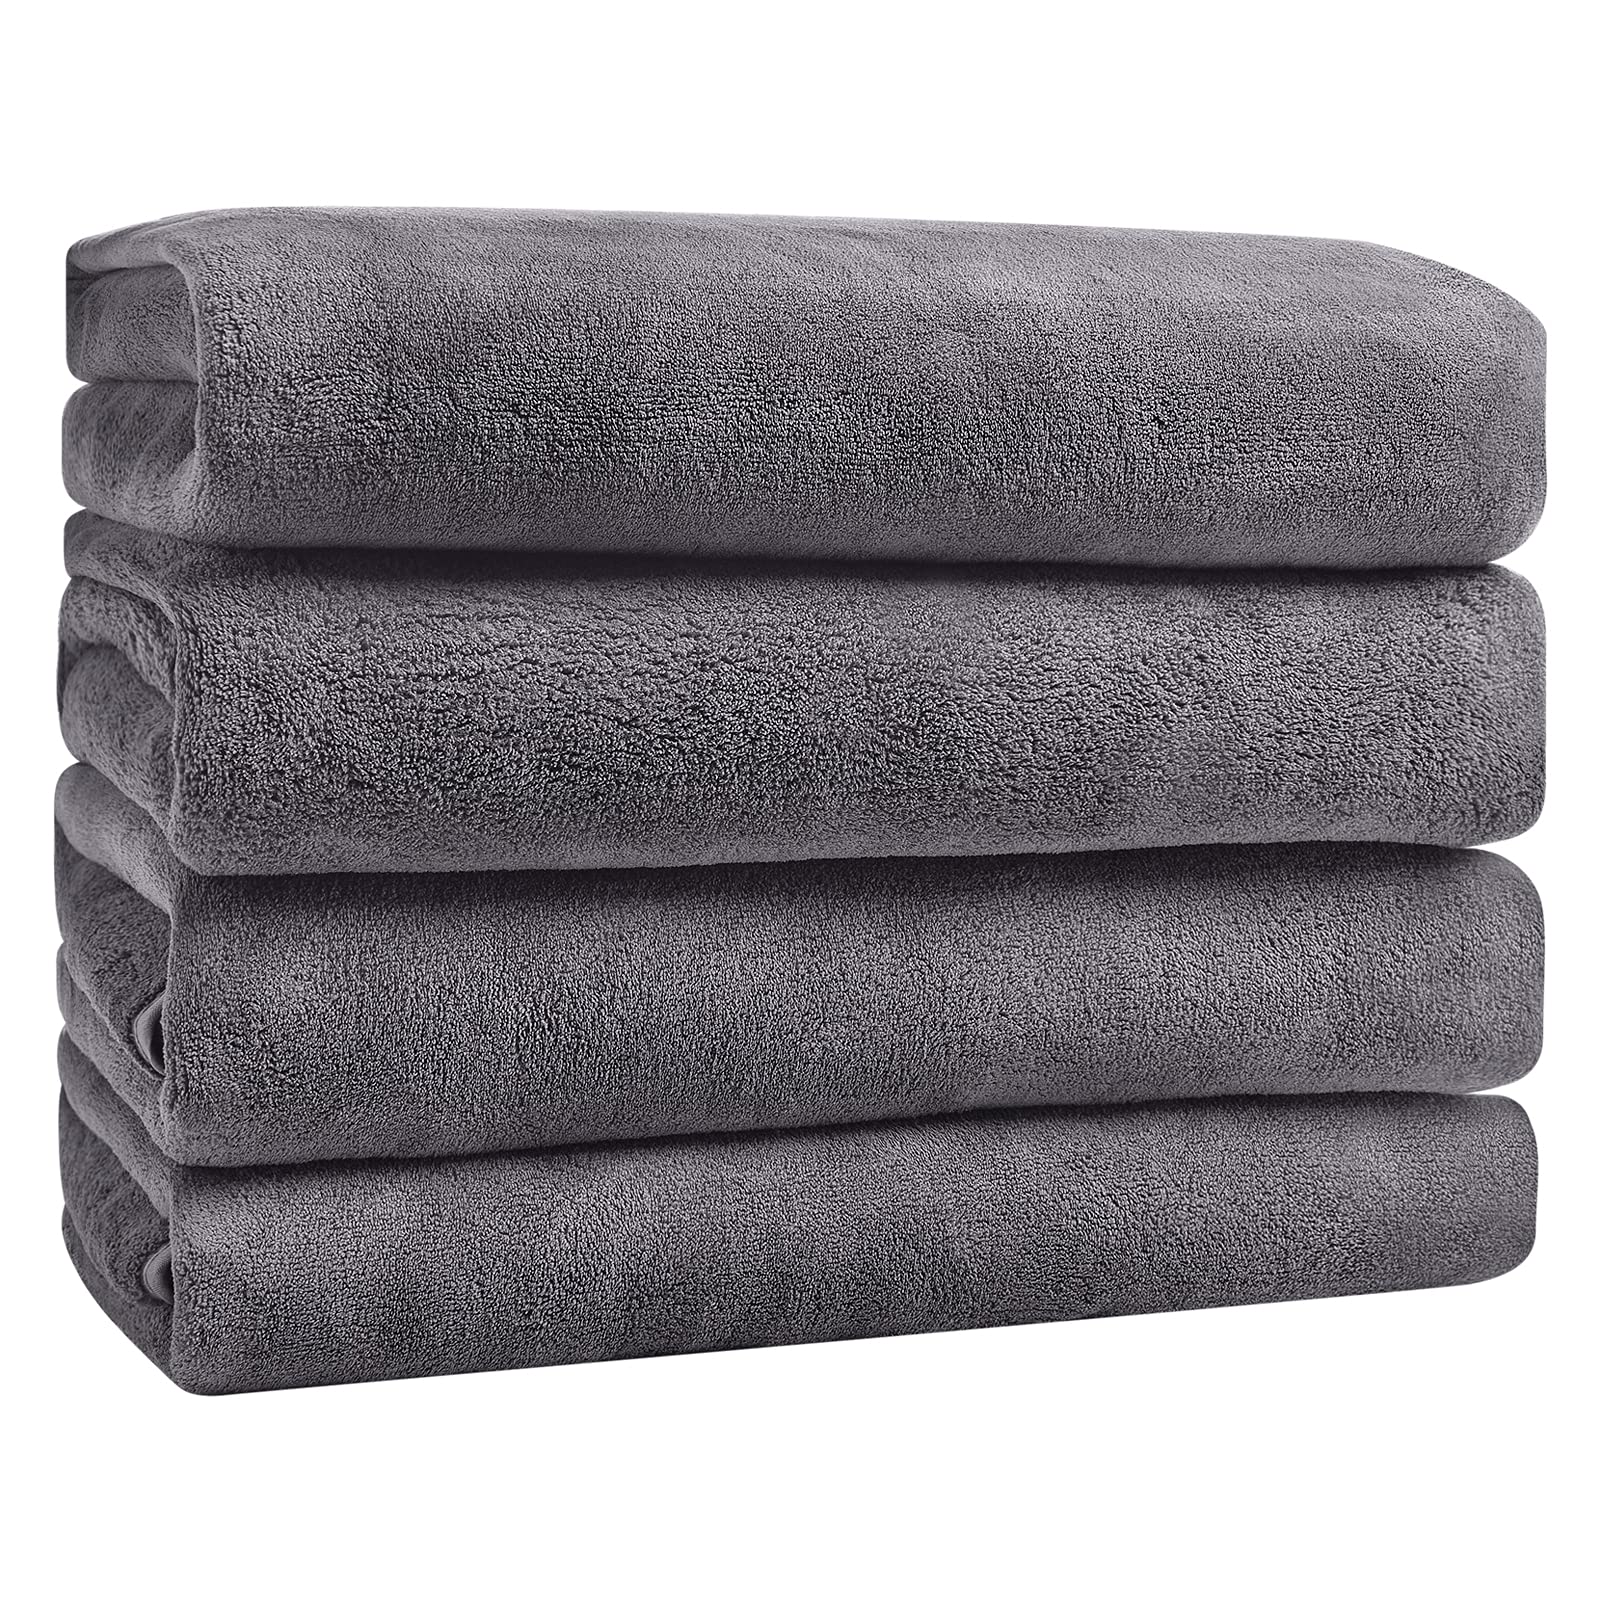 18-Piece Bath Towel Set, School Grey Bathroom decor towels Wash cloth  Microfiber towels Paper towel Compressed towel Yoga towel - AliExpress